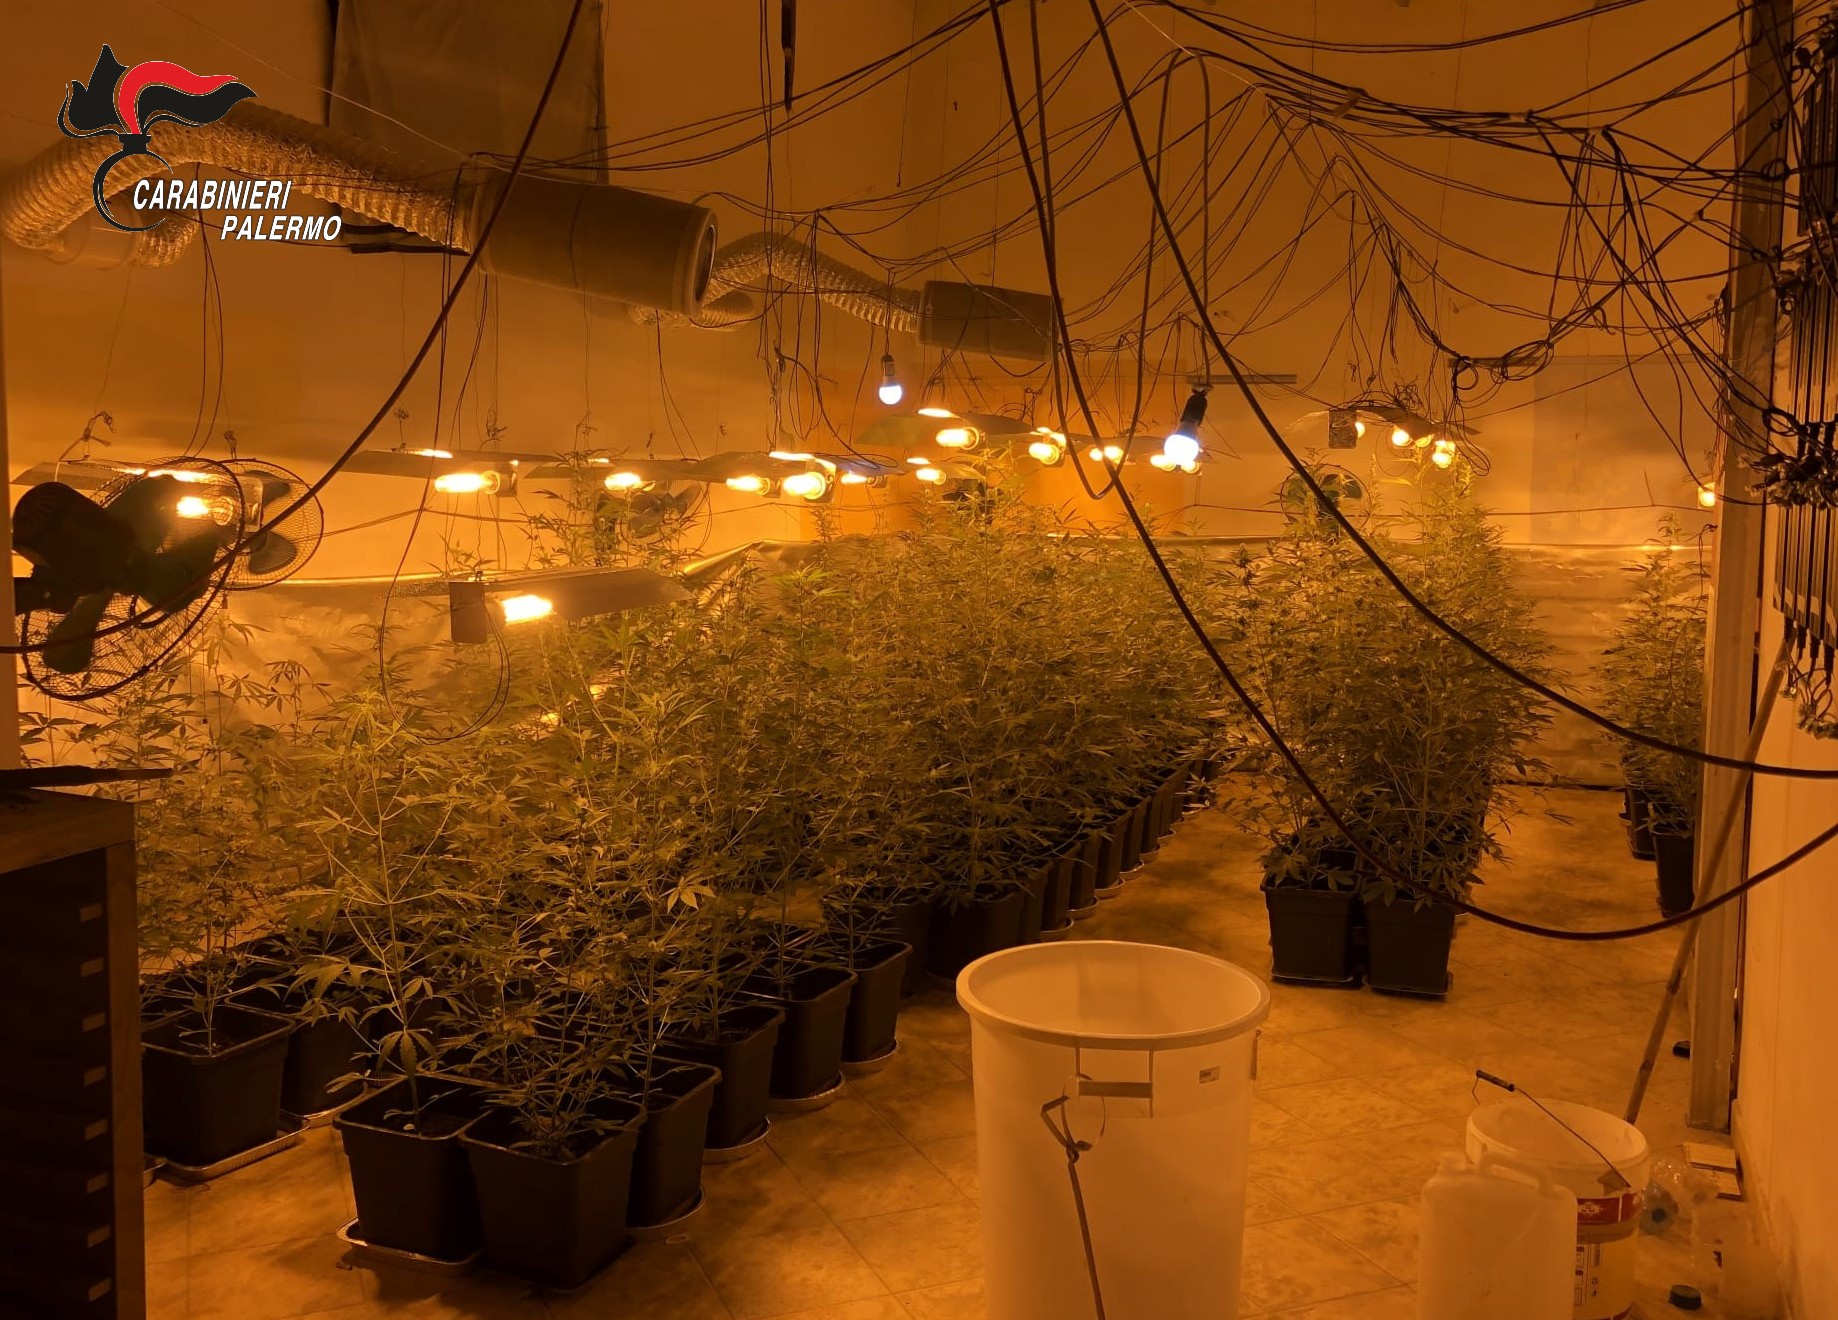 Scoperta piantagione di marijuana “indoor” alimentata abusivamente: 2 arresti, danni per 20mila euro